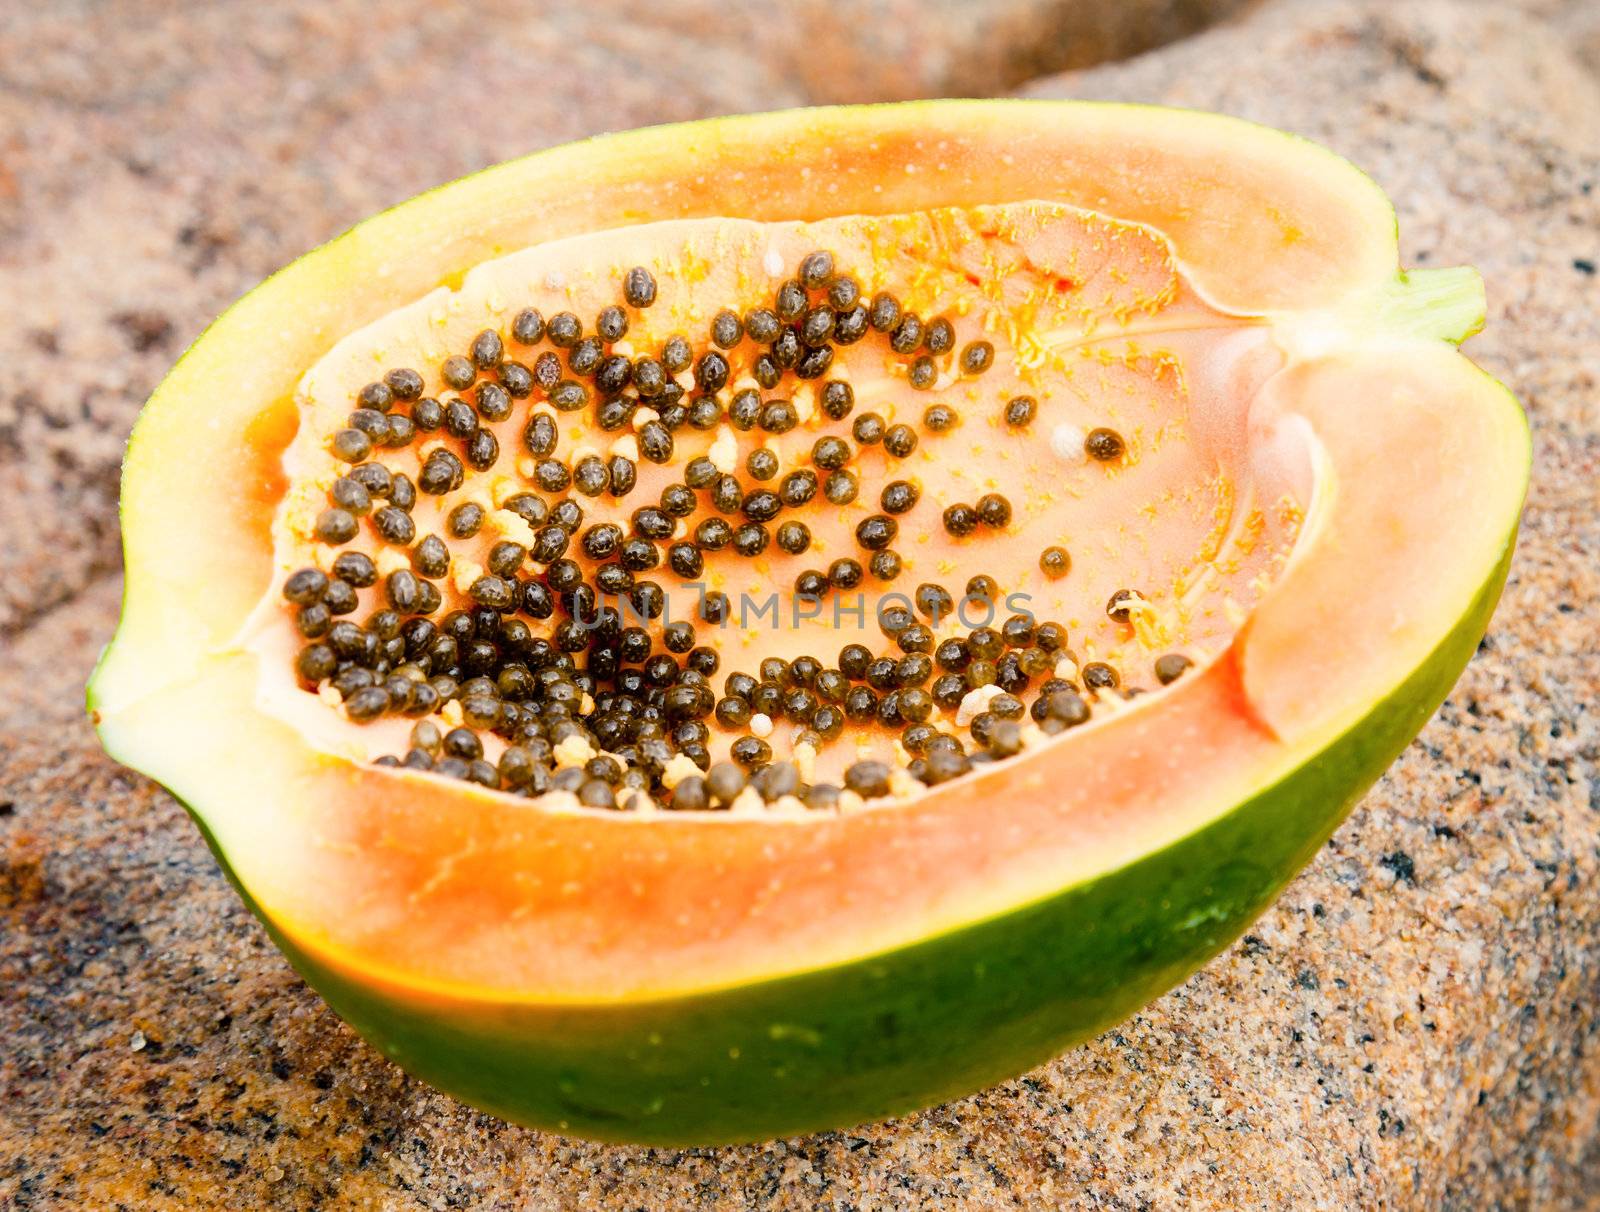 Ripe papaya cut in half on a stone